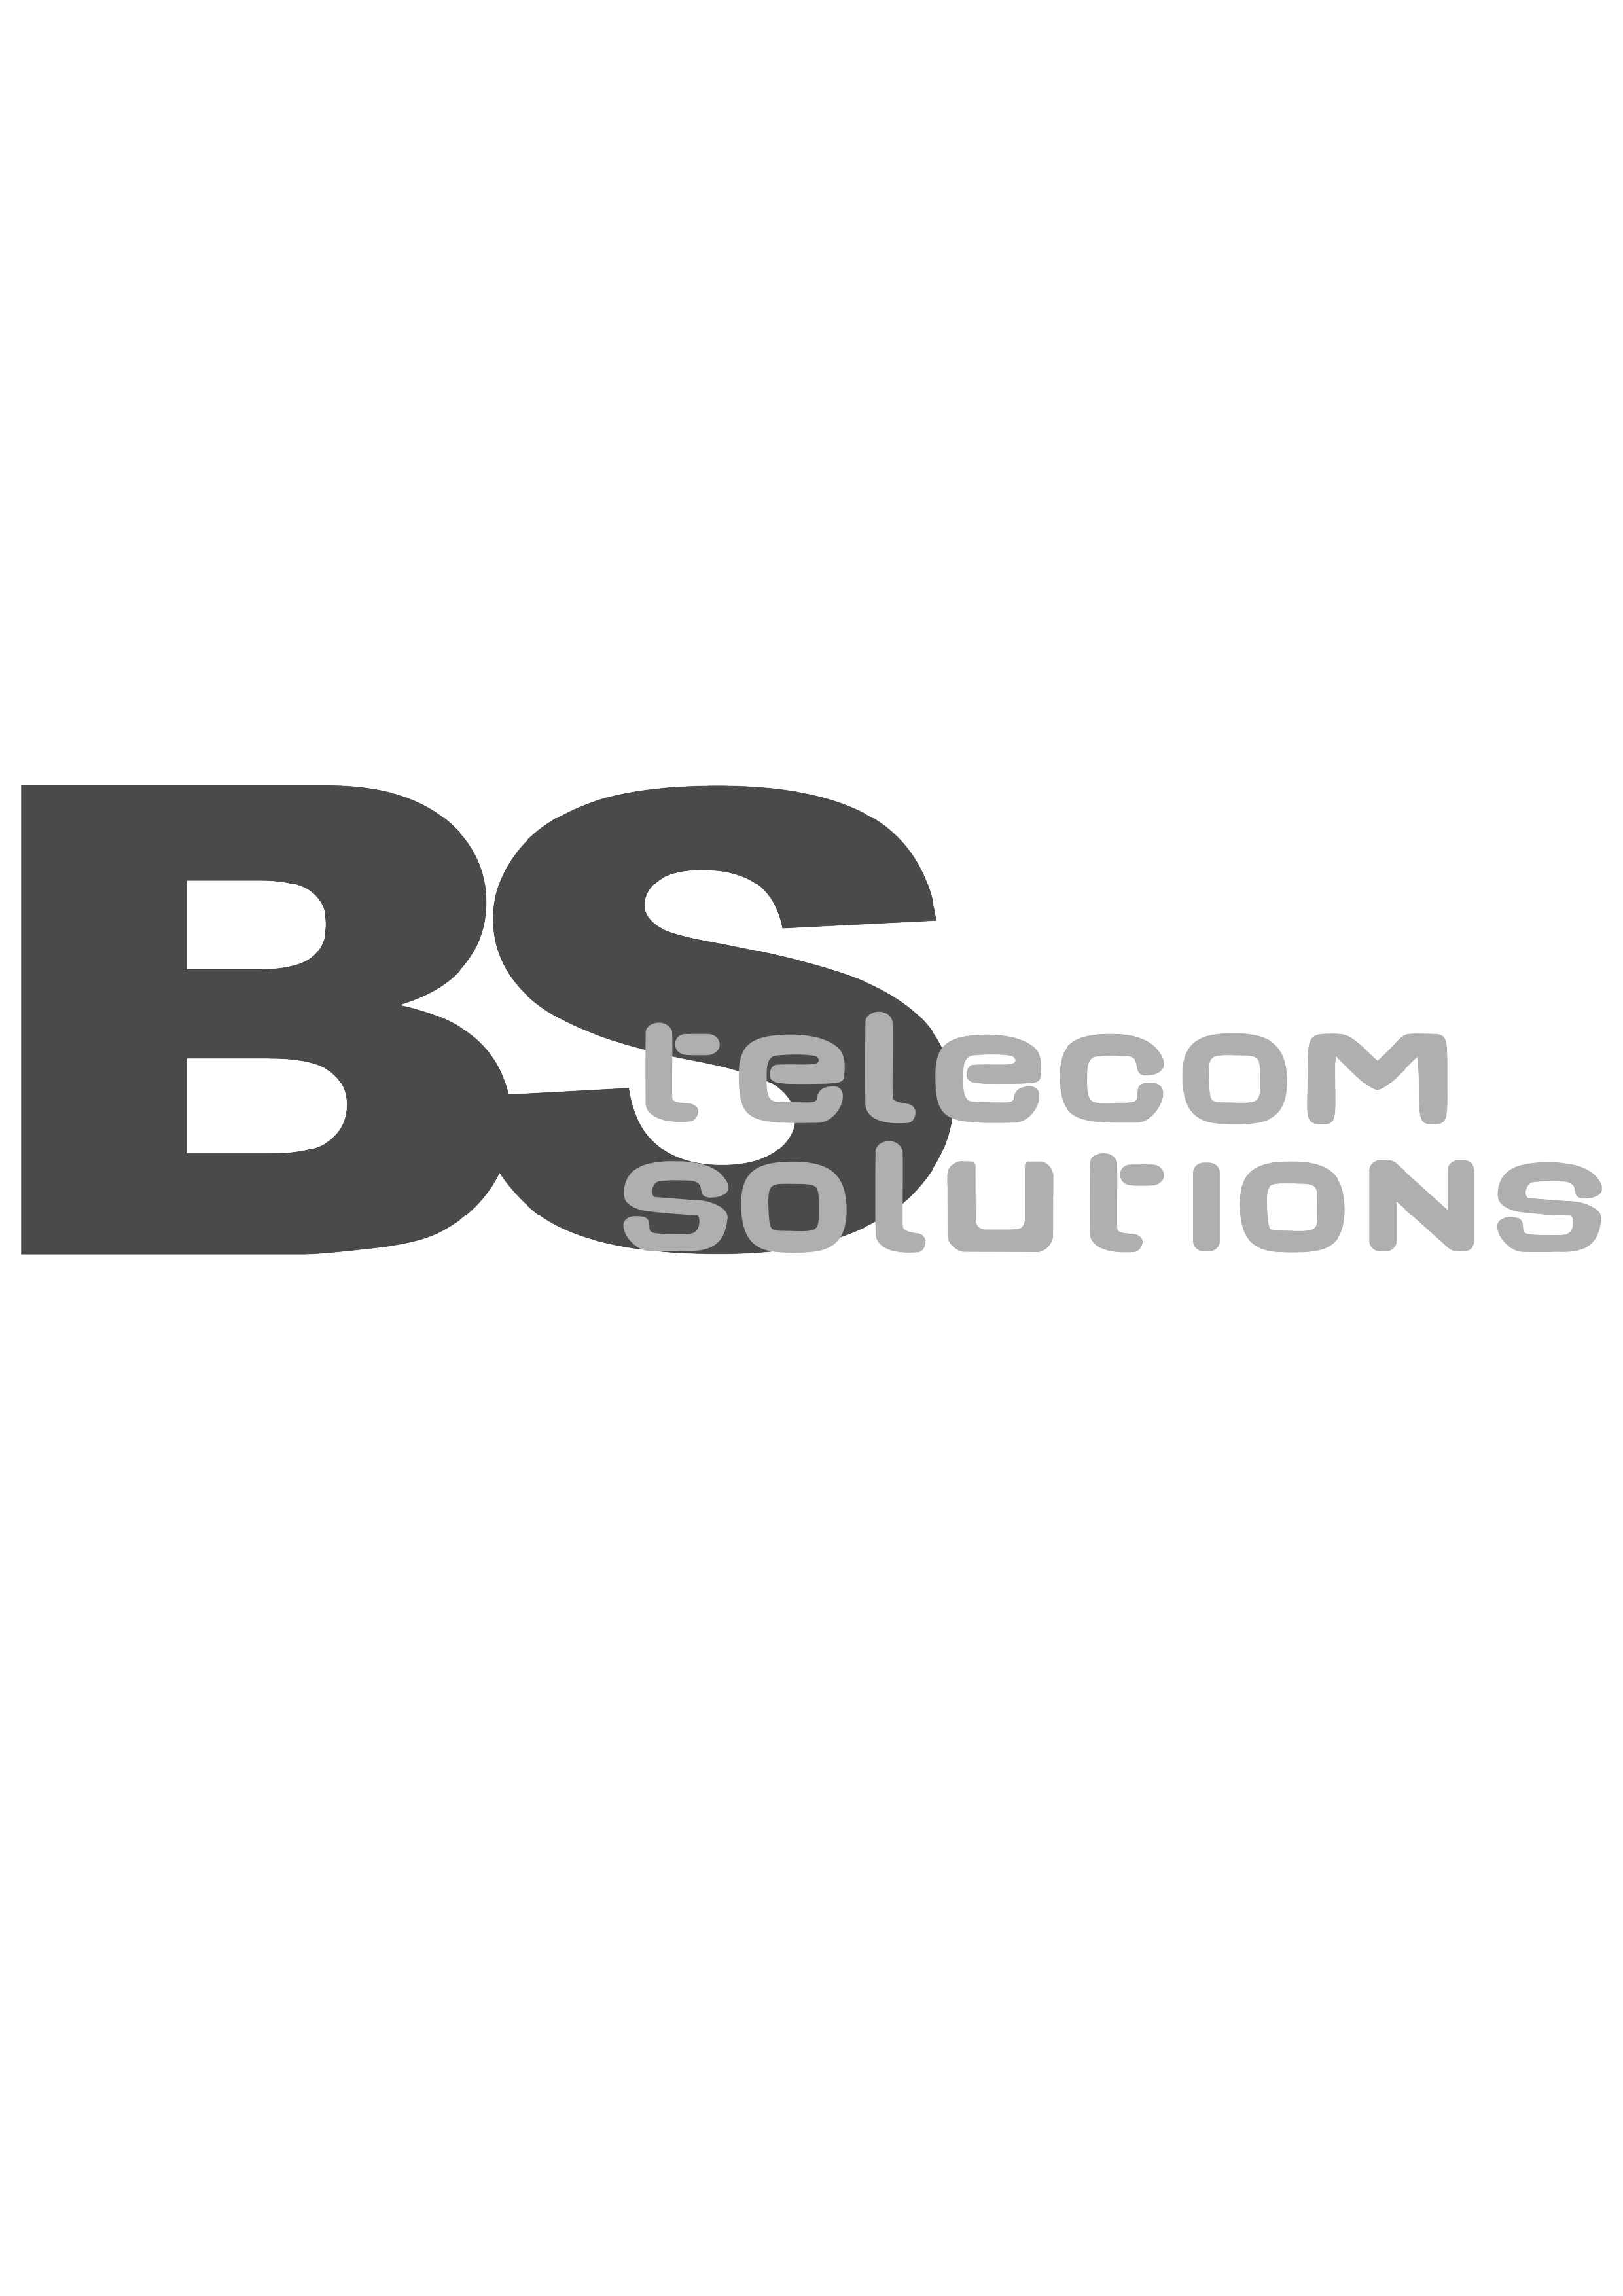 BS Telecom Solutions